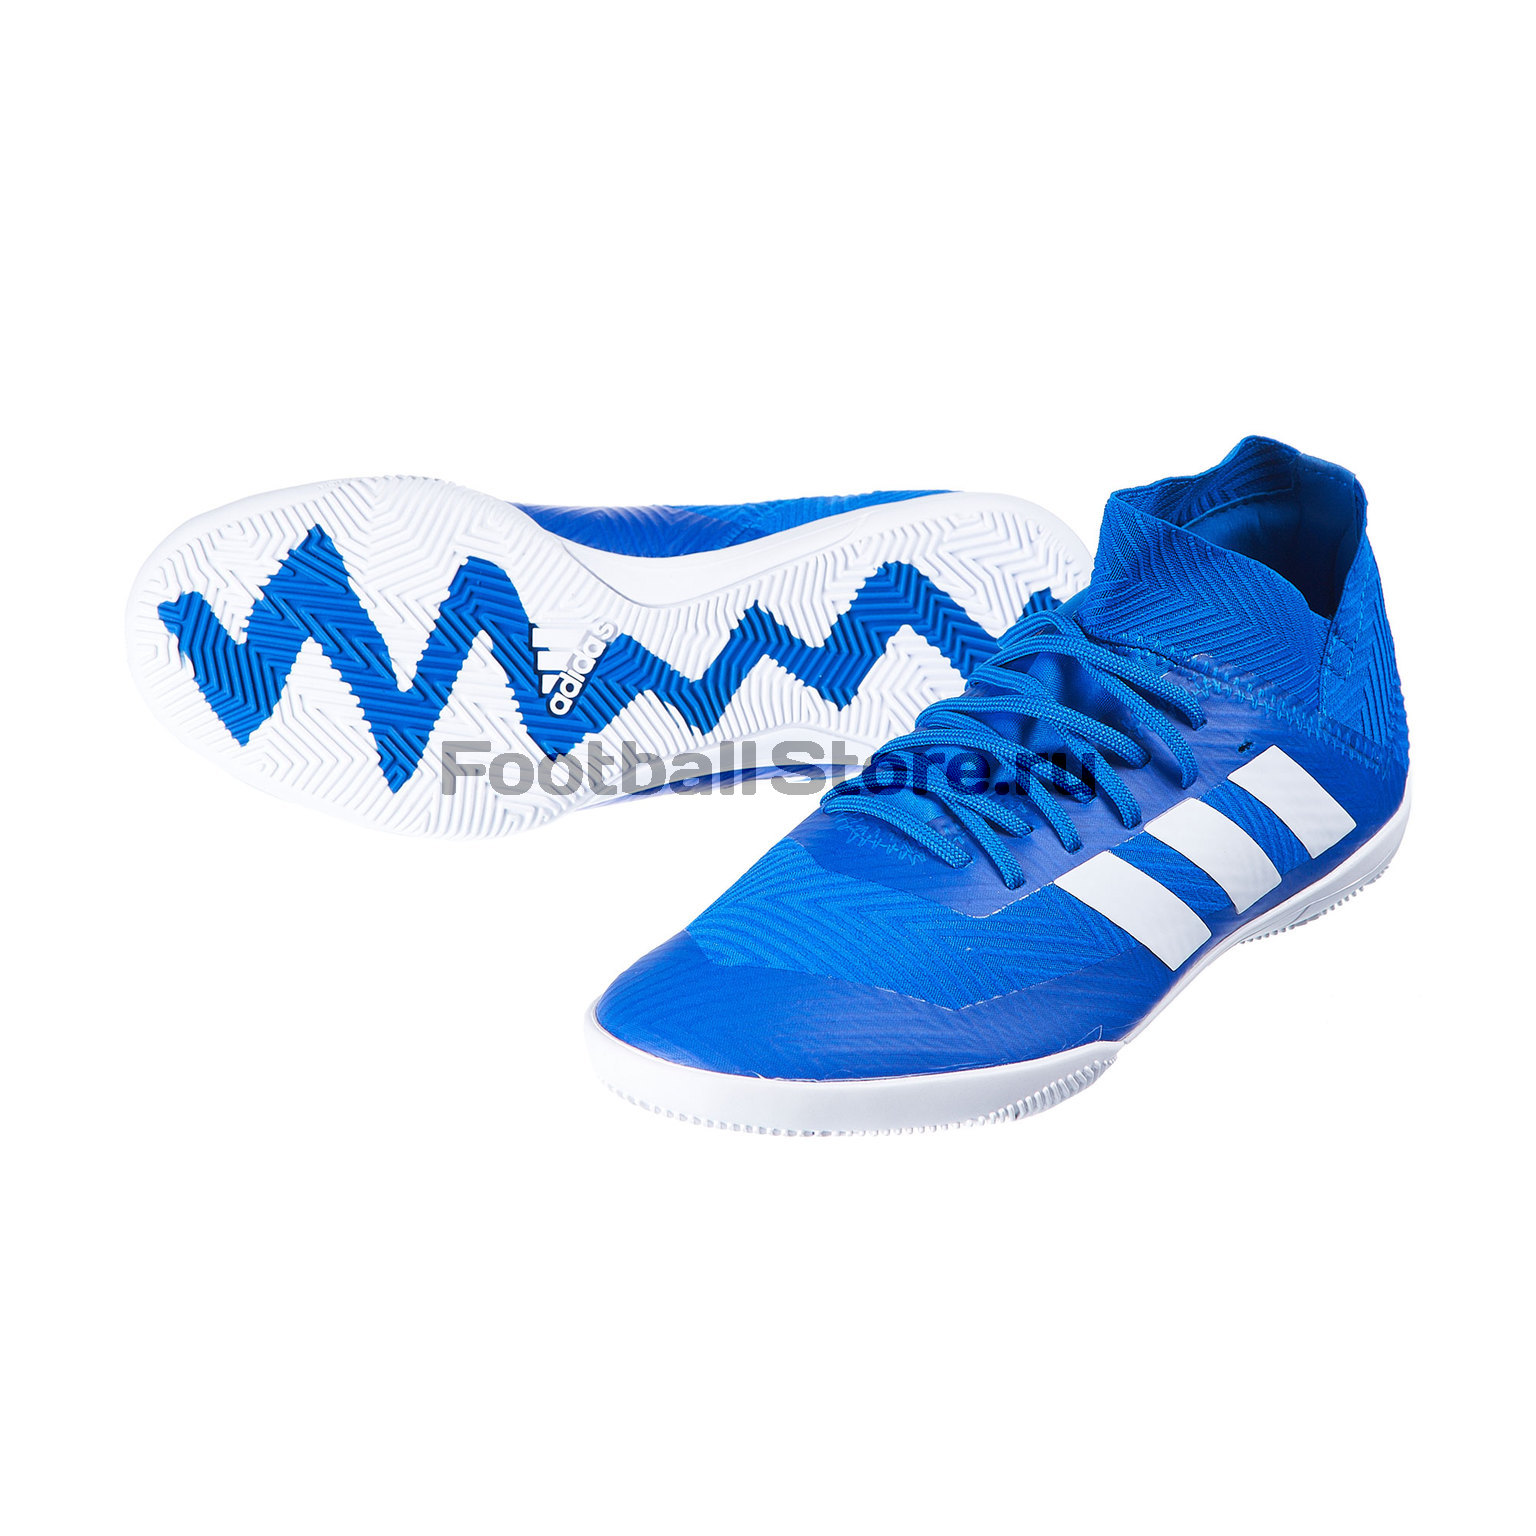 Футзалки детские Adidas Nemeziz Tango 18.3 IN DB2374